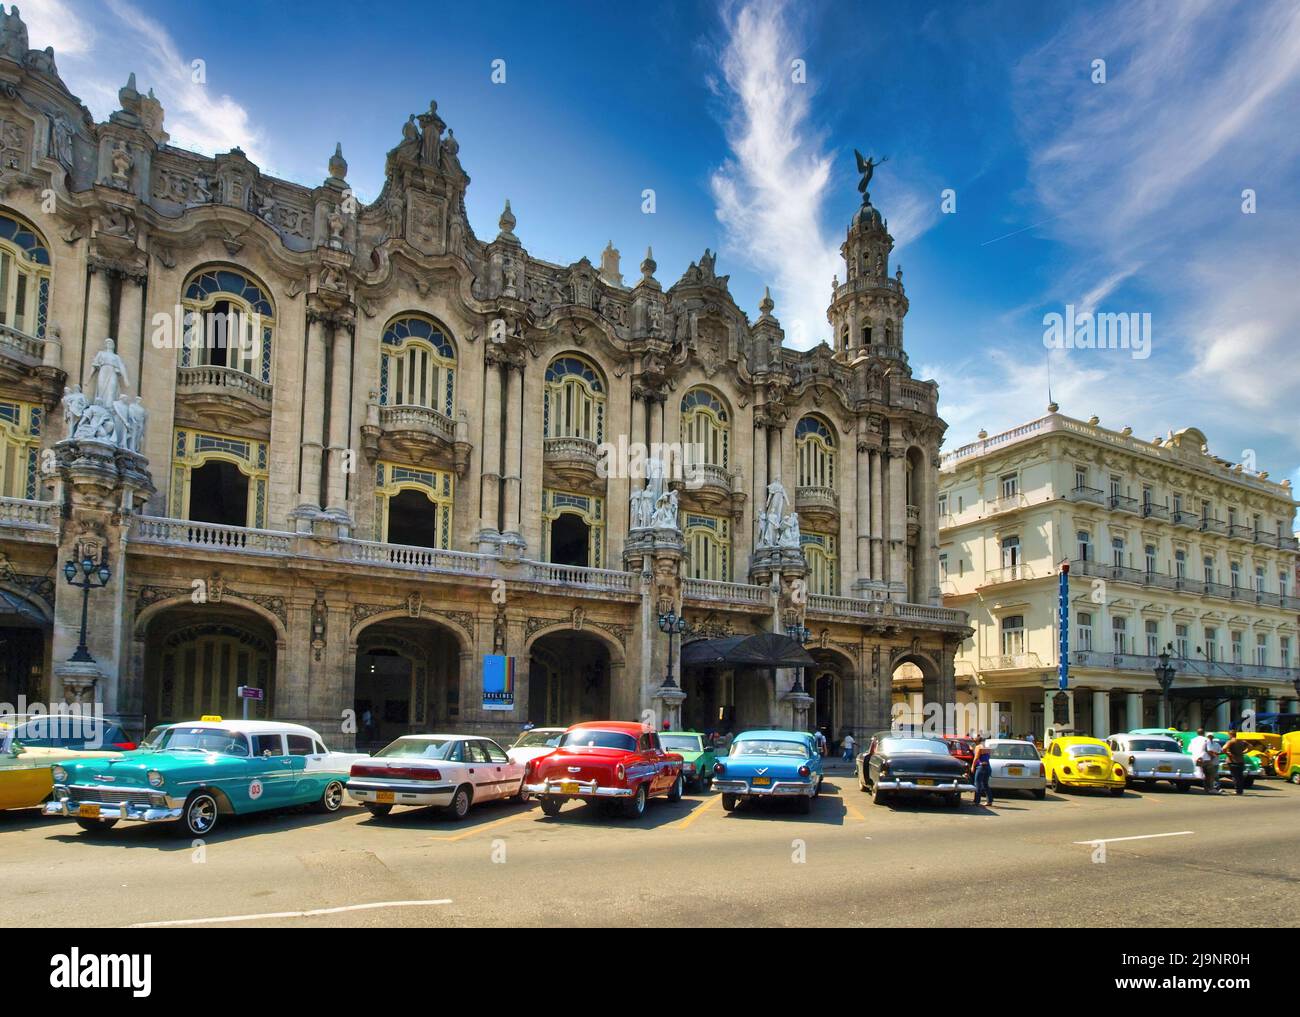 Die wunderschöne und farbenfrohe Hauptstadt Kubas, Havanna, eines der beliebtesten Reiseziele der Welt. Stockfoto